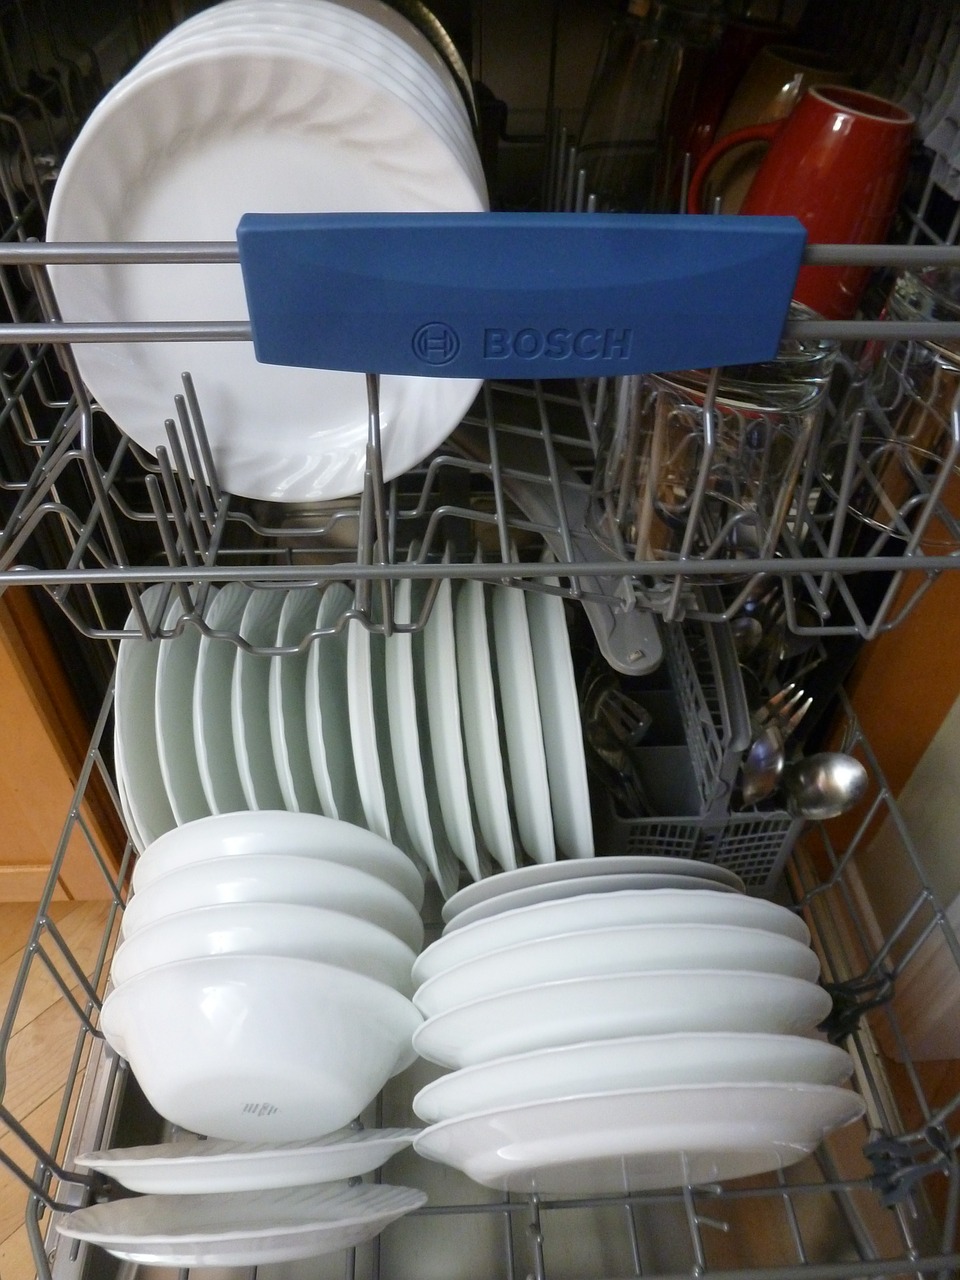 Azaé Haushaltstipp Wie reinigt man die Spülmaschine?